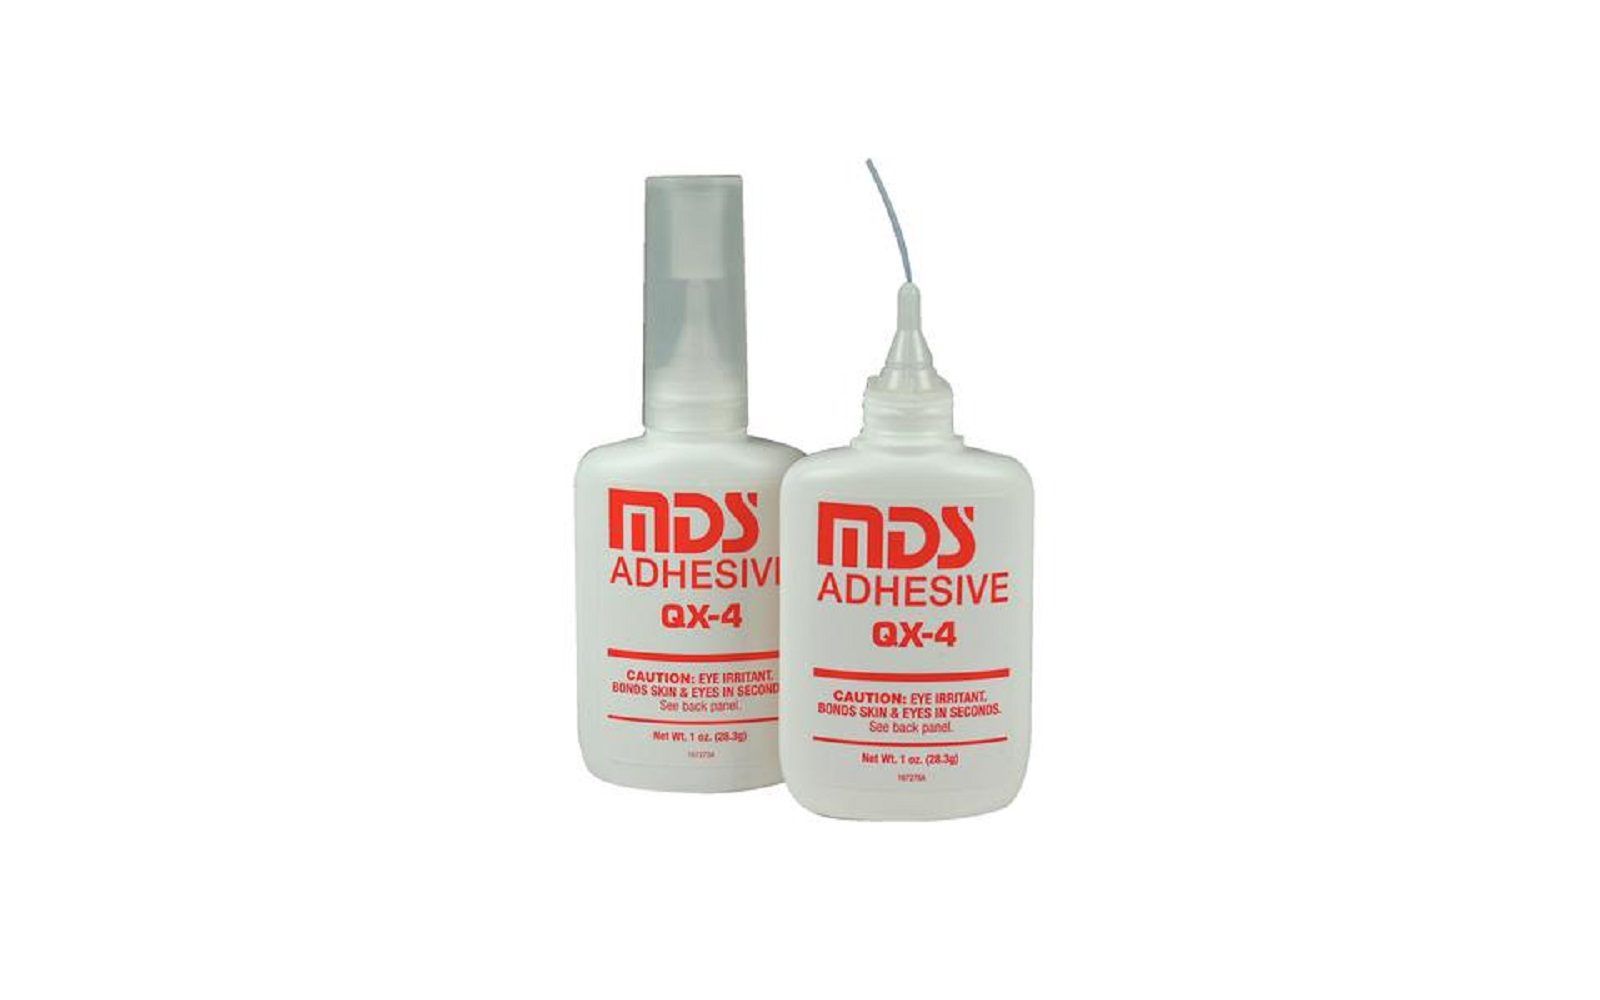 Qx4 adhesive – 1 oz bottle